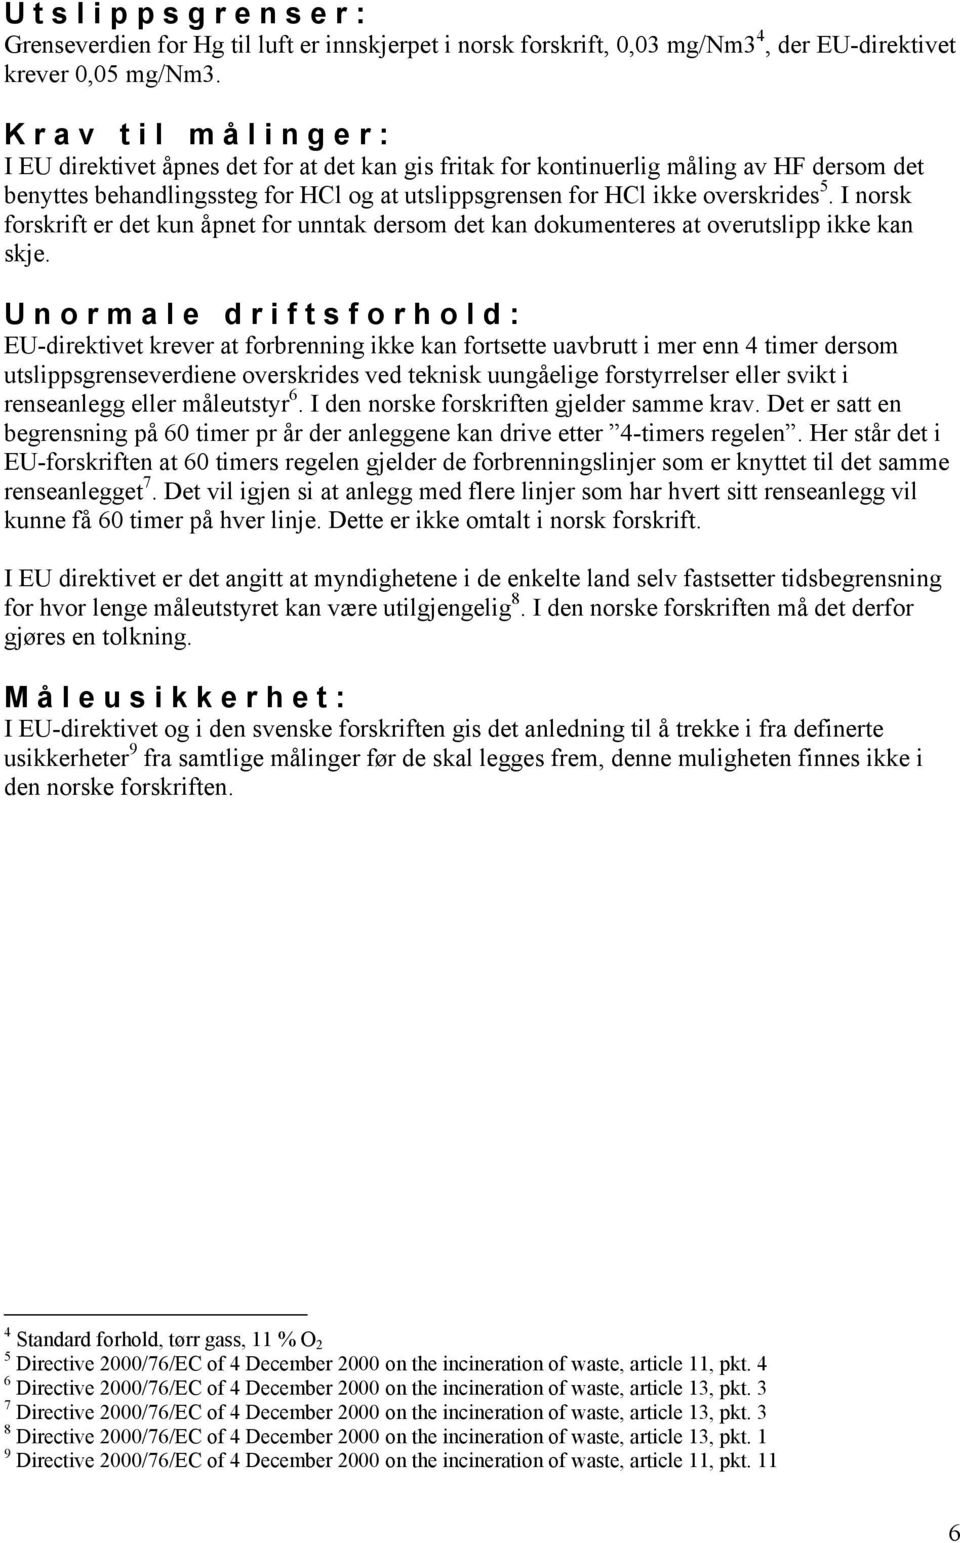 I norsk forskrift er det kun åpnet for unntak dersom det kan dokumenteres at overutslipp ikke kan skje.